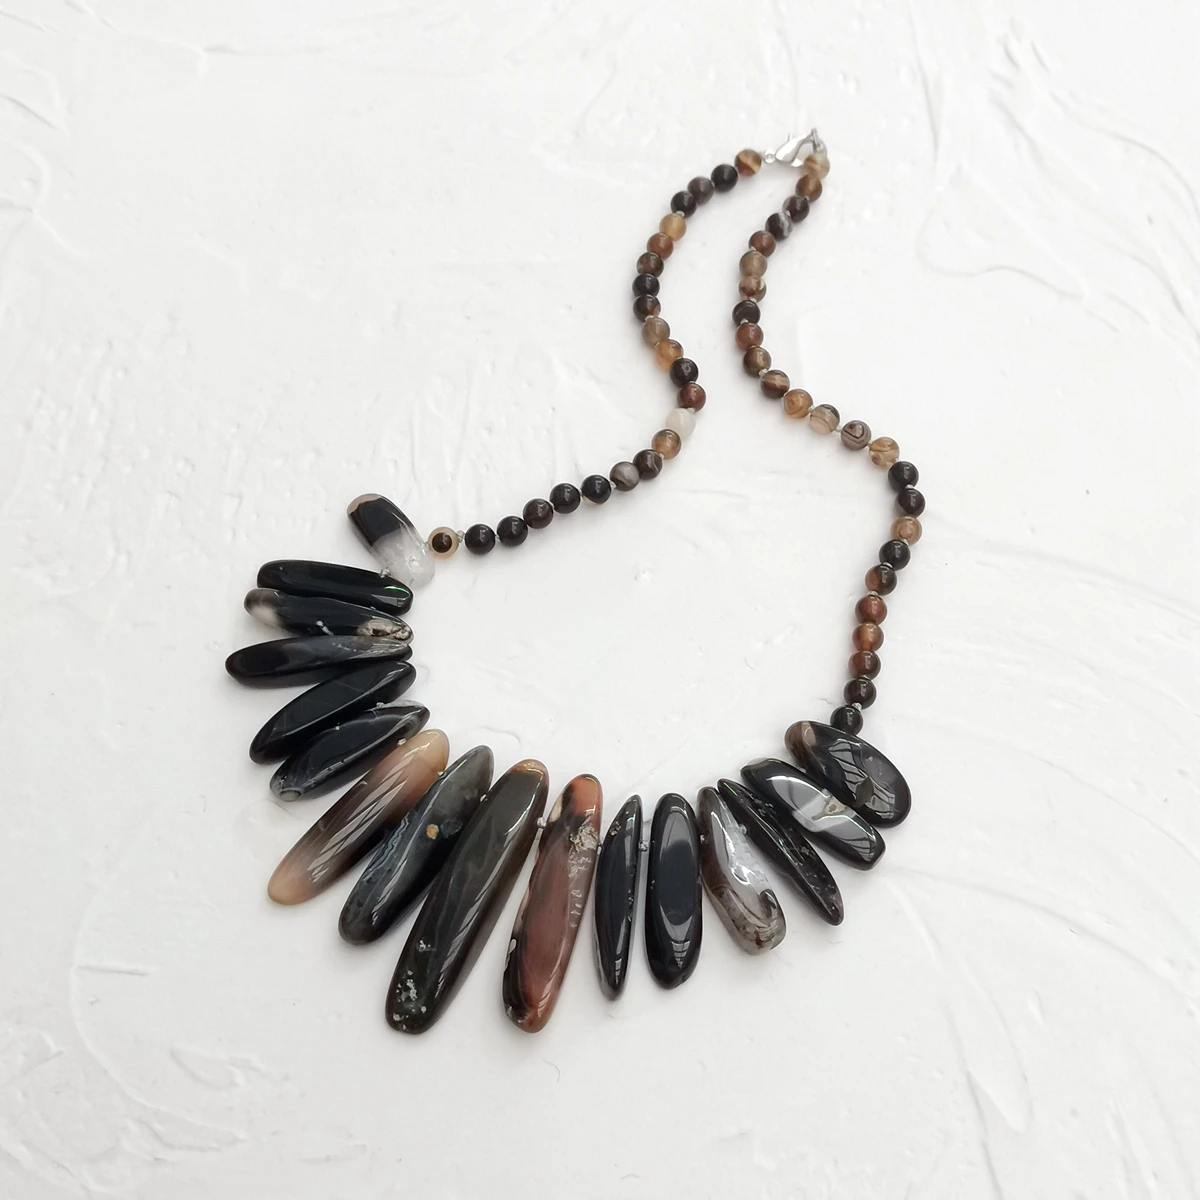 

Lii Ji ожерелье из натурального камня черный коричневый Агат ожерелье-чокер 49 см в наличии Распродажа женских ювелирных изделий подарок